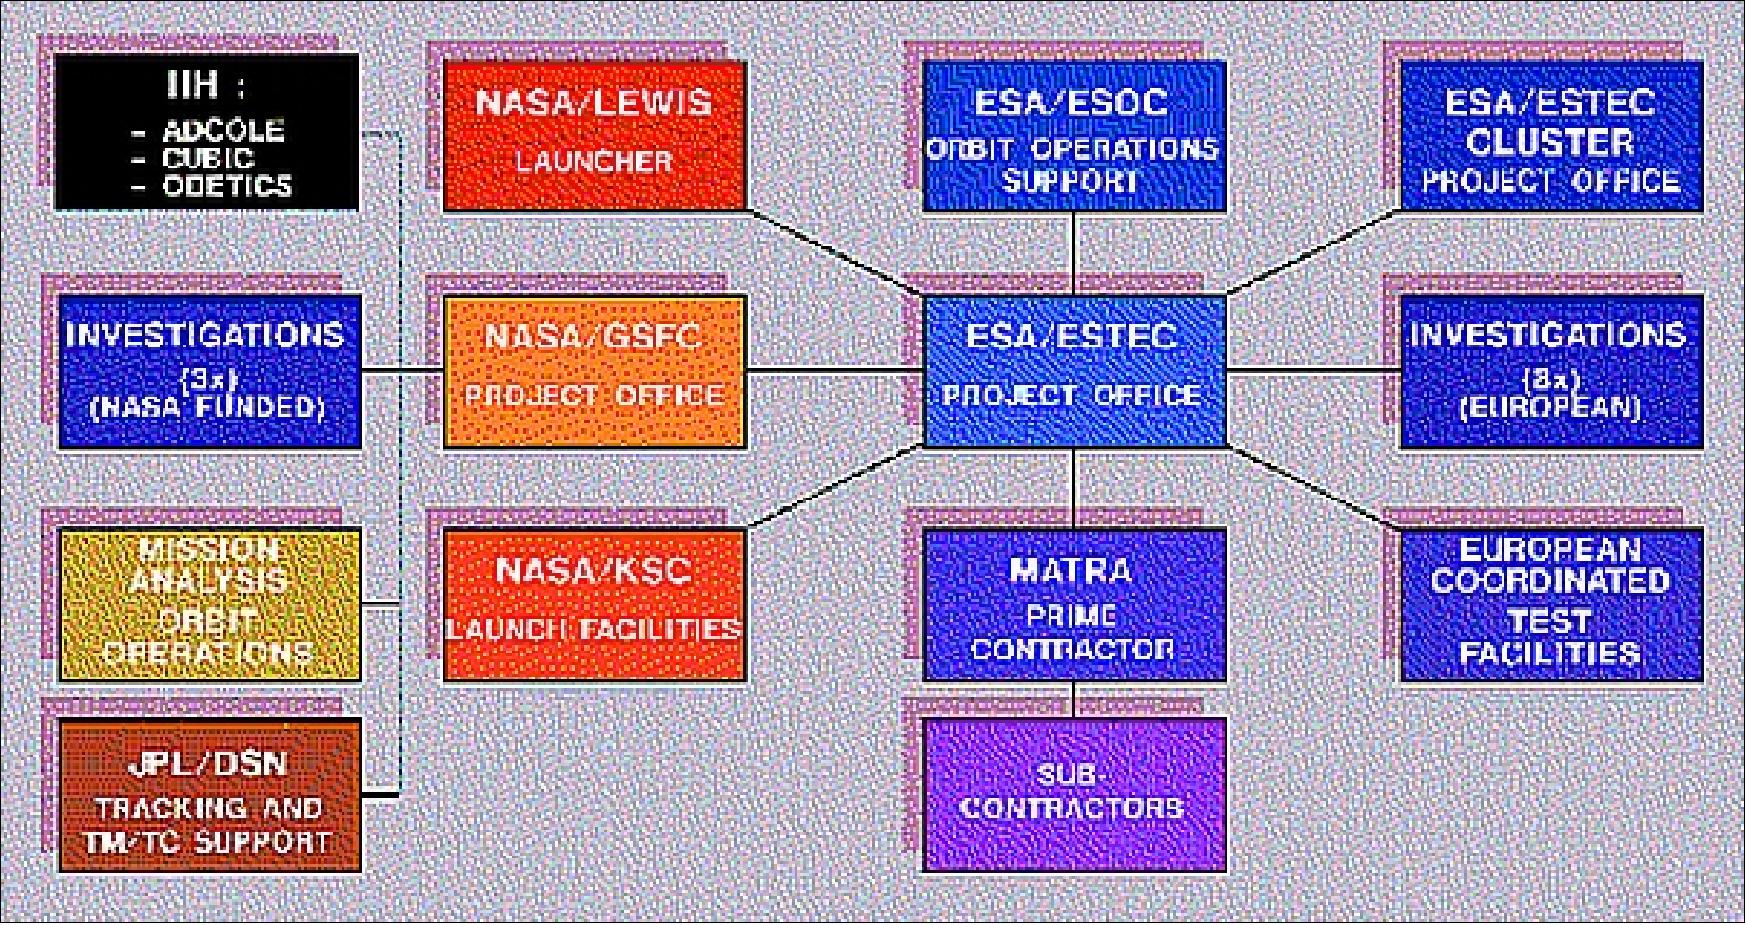 SOHO mission elements